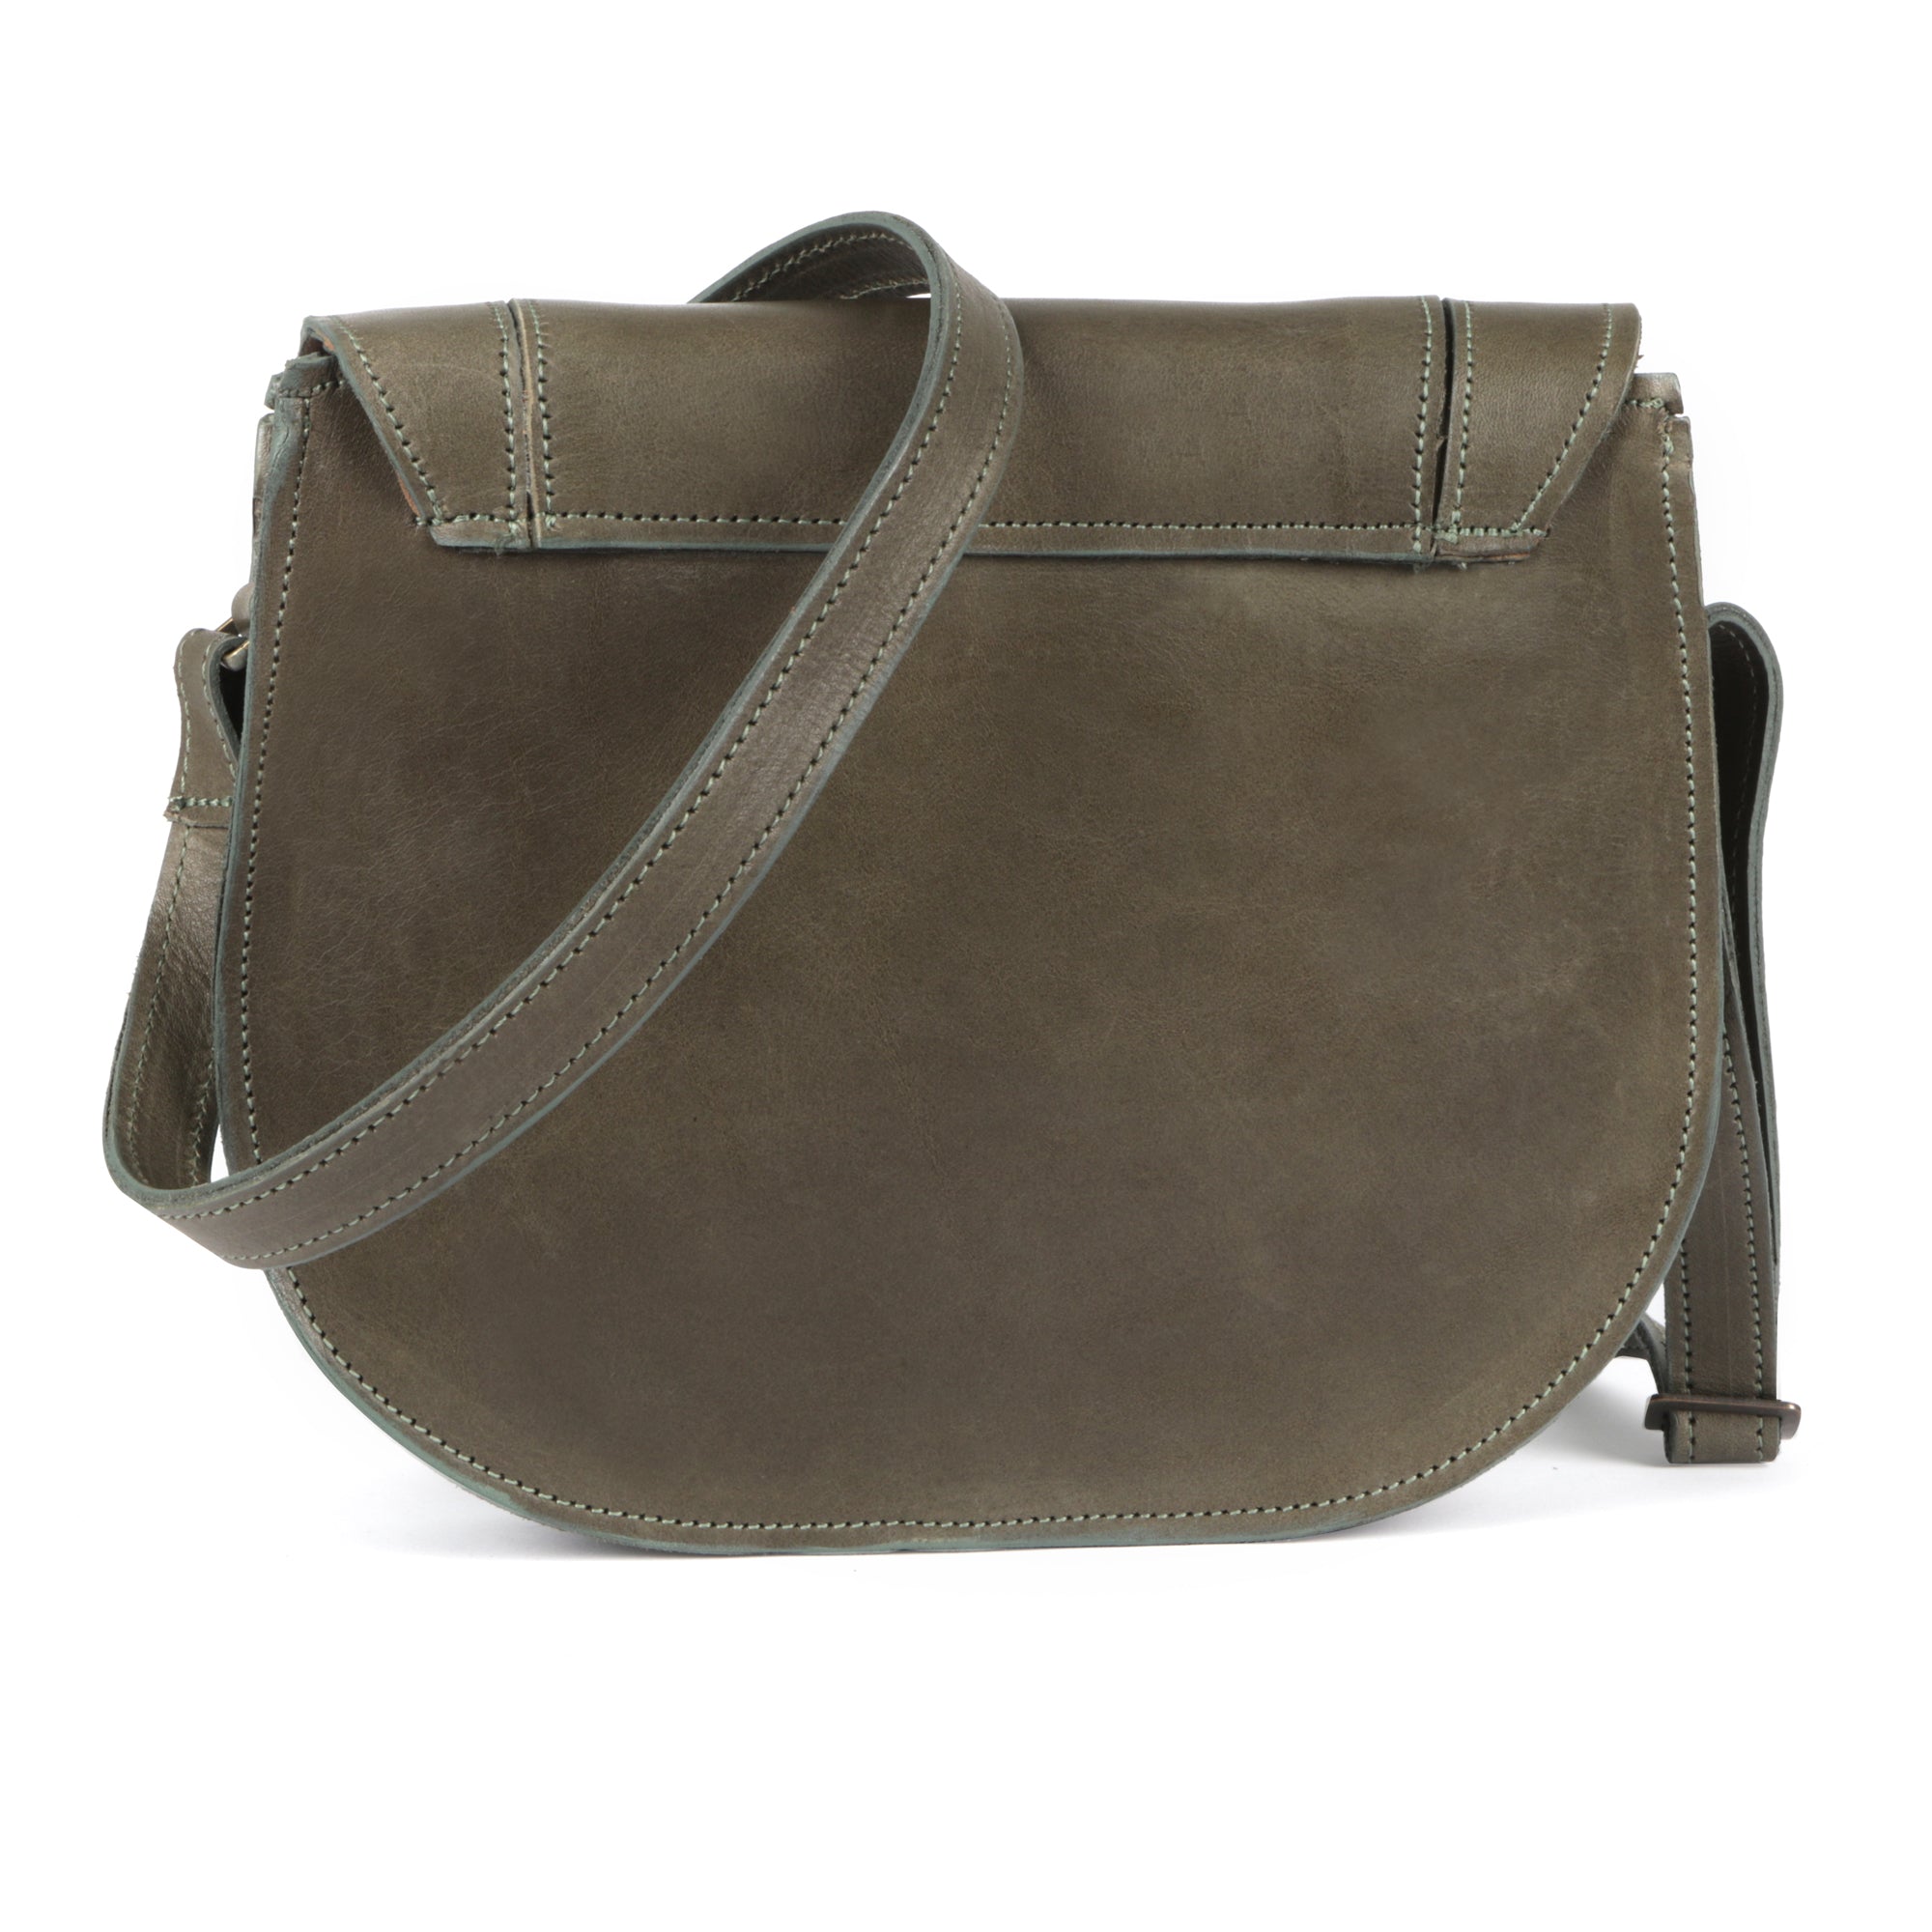 Lerato Premium Leather Ladies Handbag